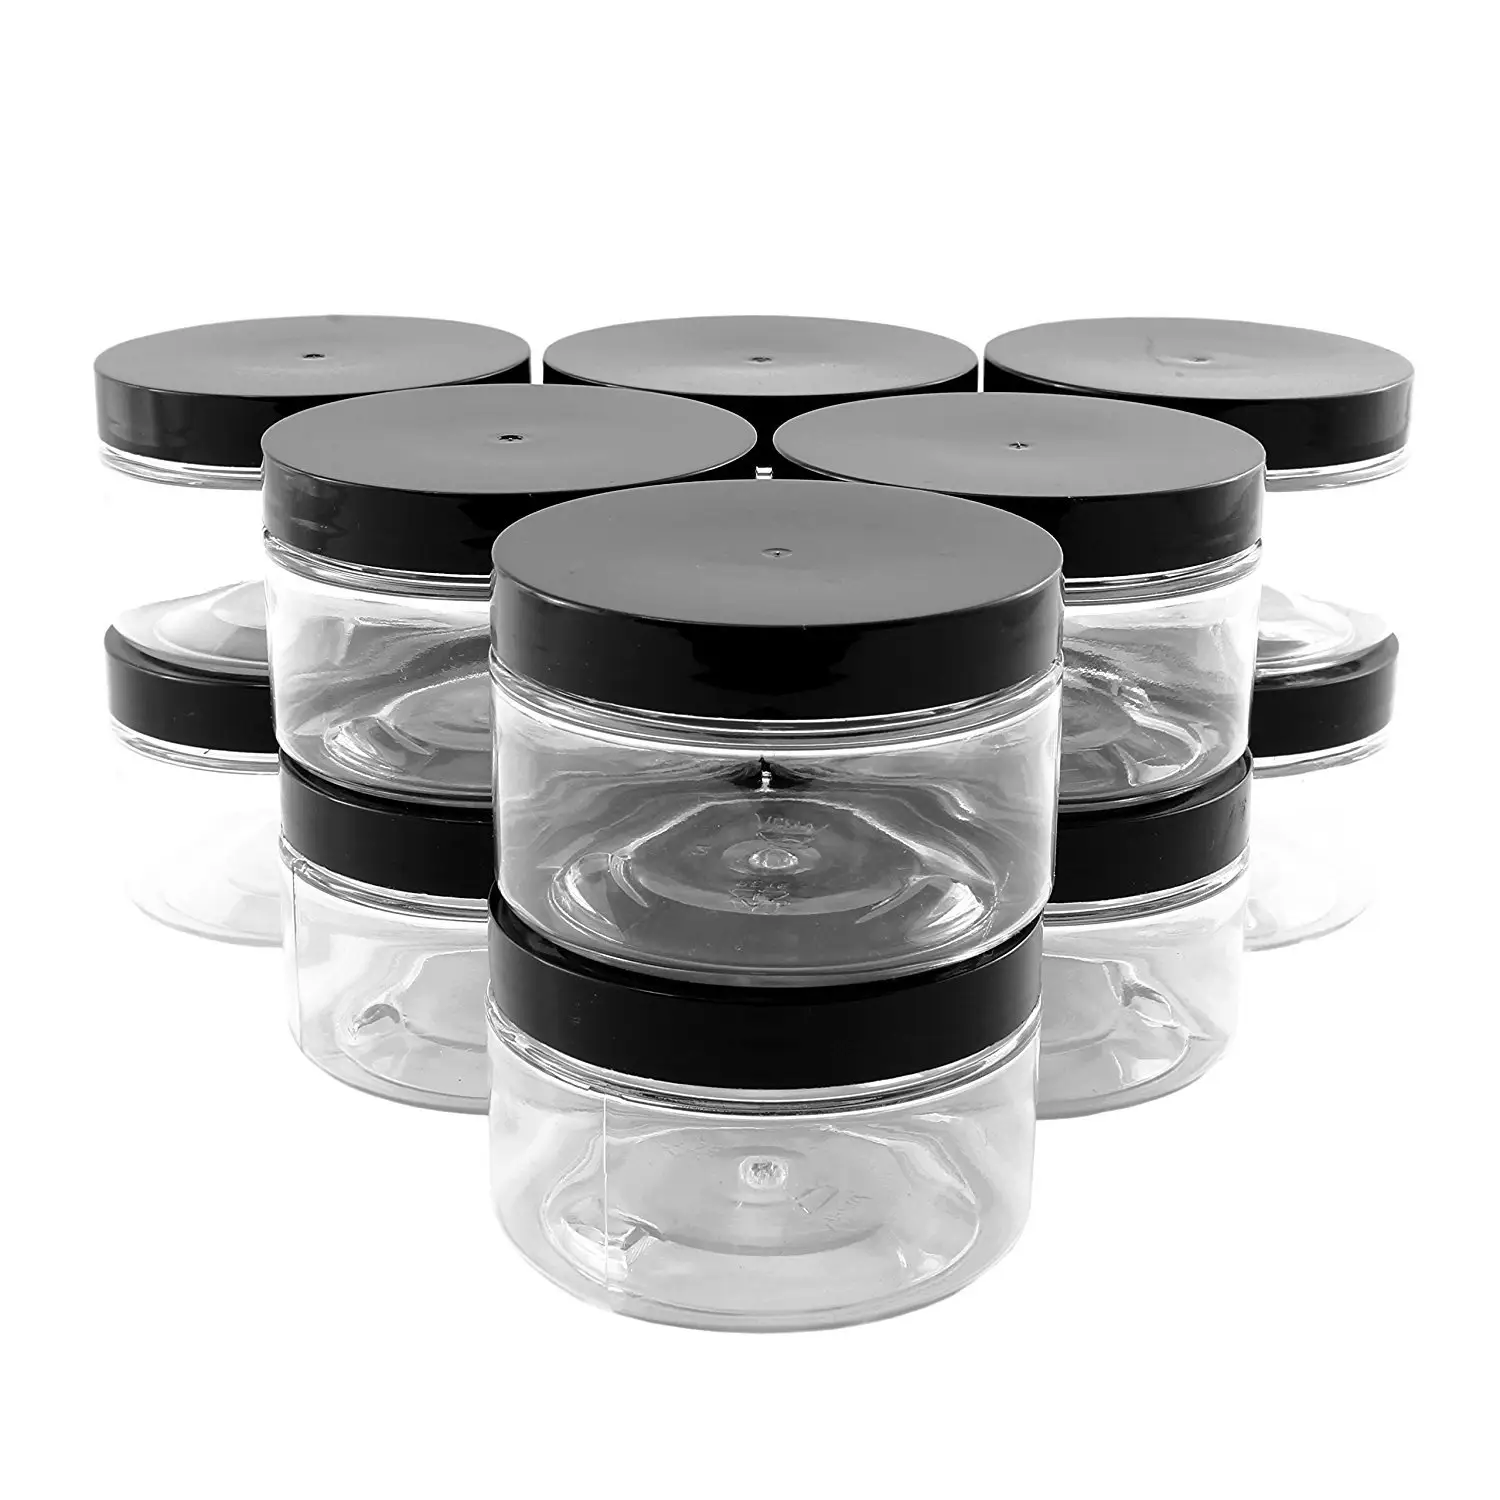 Doppio barattolo di plastica PET a prova di odore sigillato ad aria resistente all'umidità BPA-FREE contenitore RX strain bud 3g 5g herb jam spice